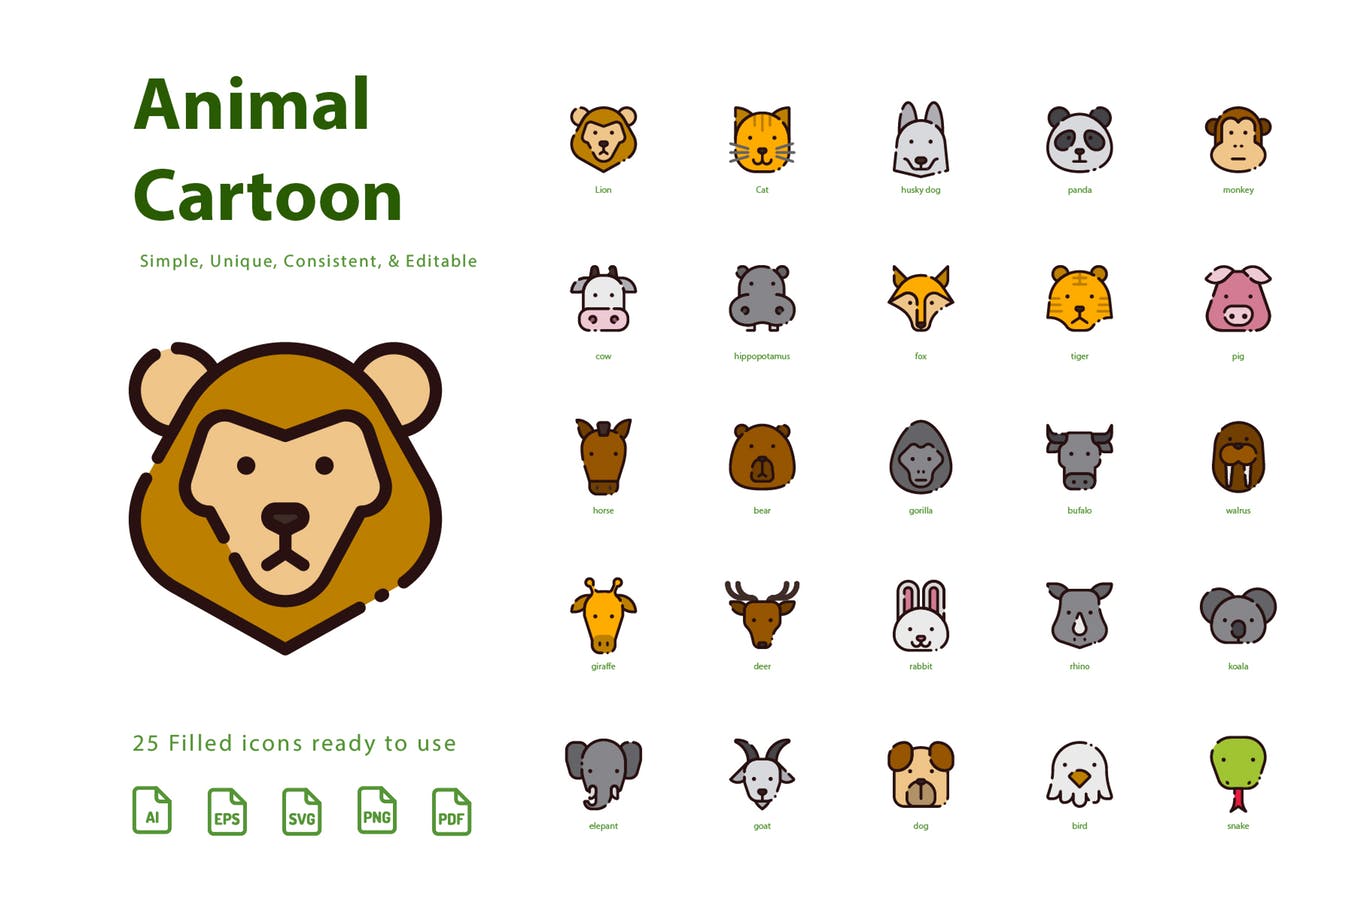 动物卡通形象填充图标素材 Animal Cartoon (Filled)插图(1)